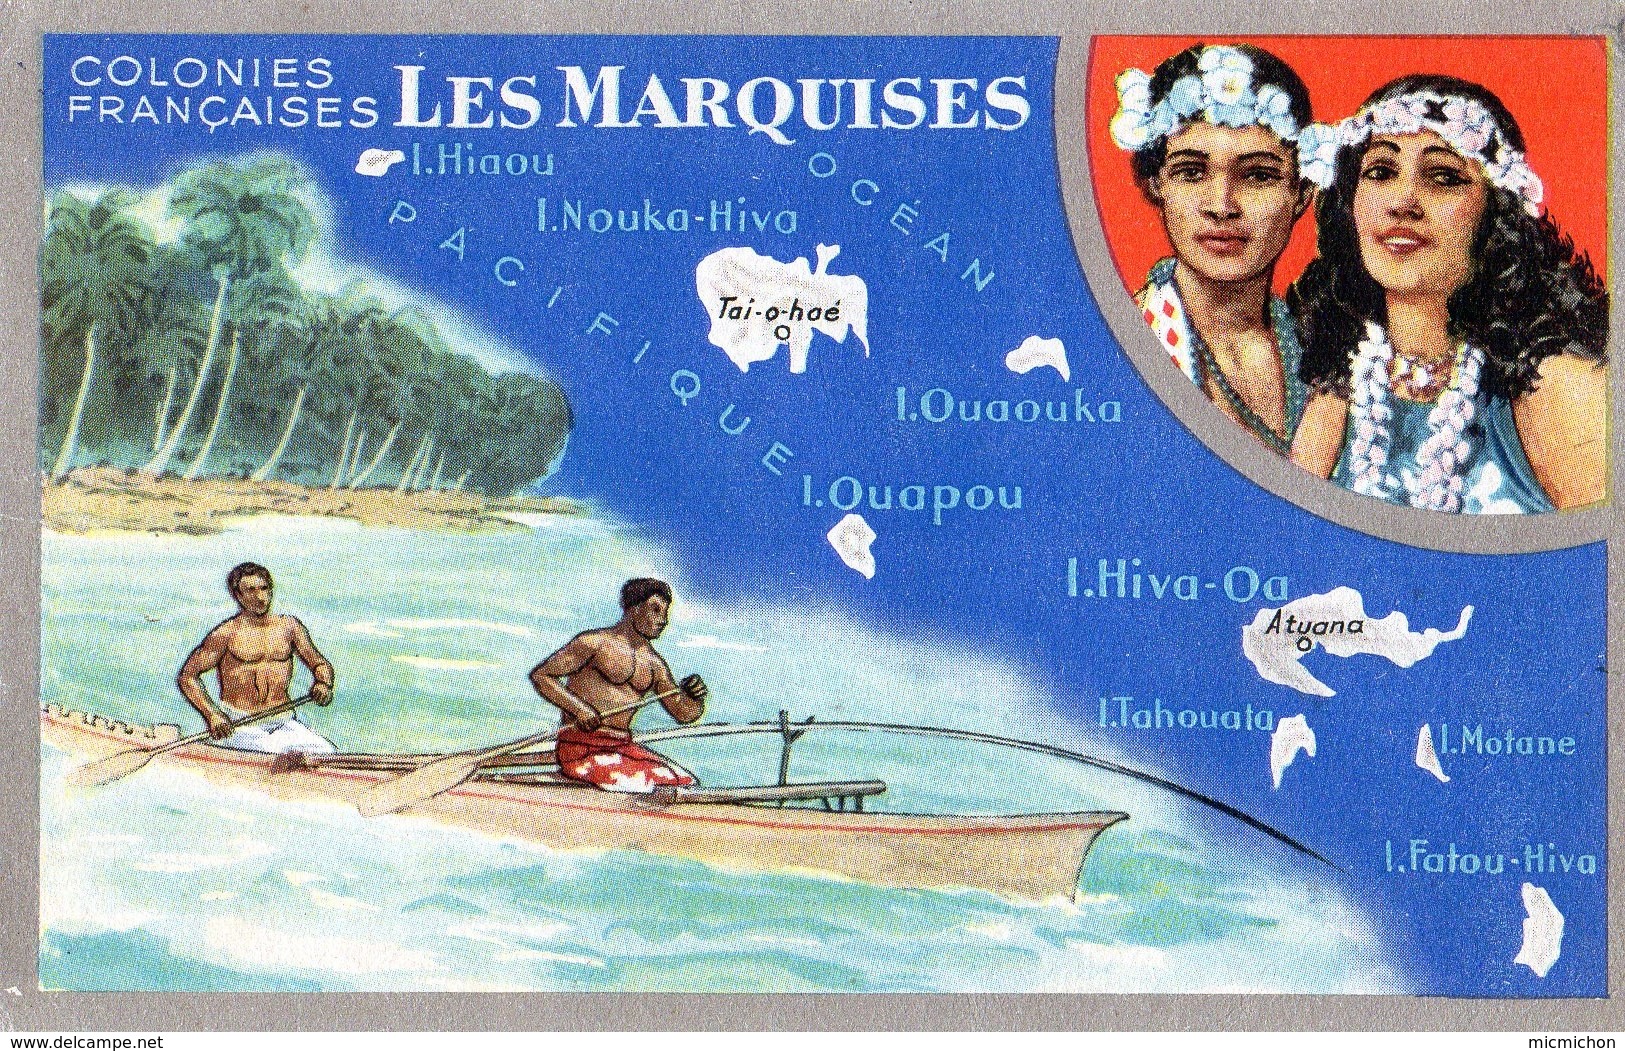 Carte LIon Noir Colonies Françaises Les MARQUISES (2) - Publicité